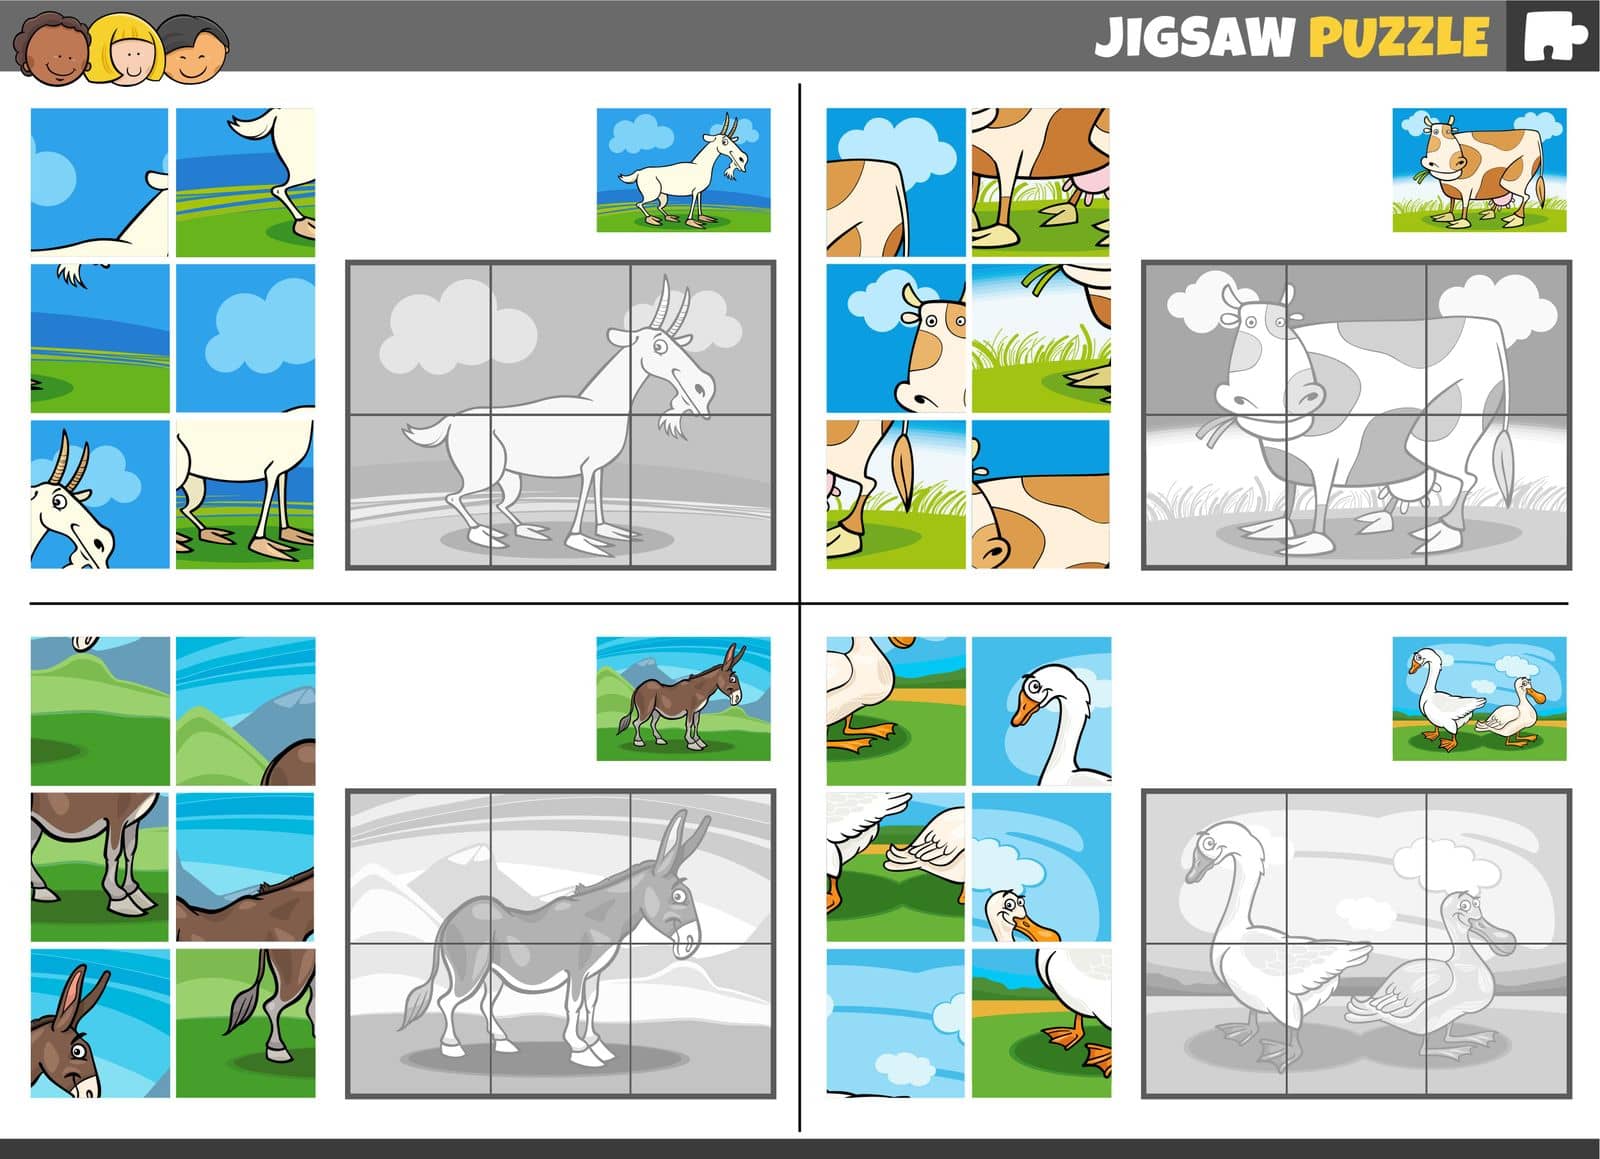 jigsaw puzzle game set with farm animal characters by izakowski